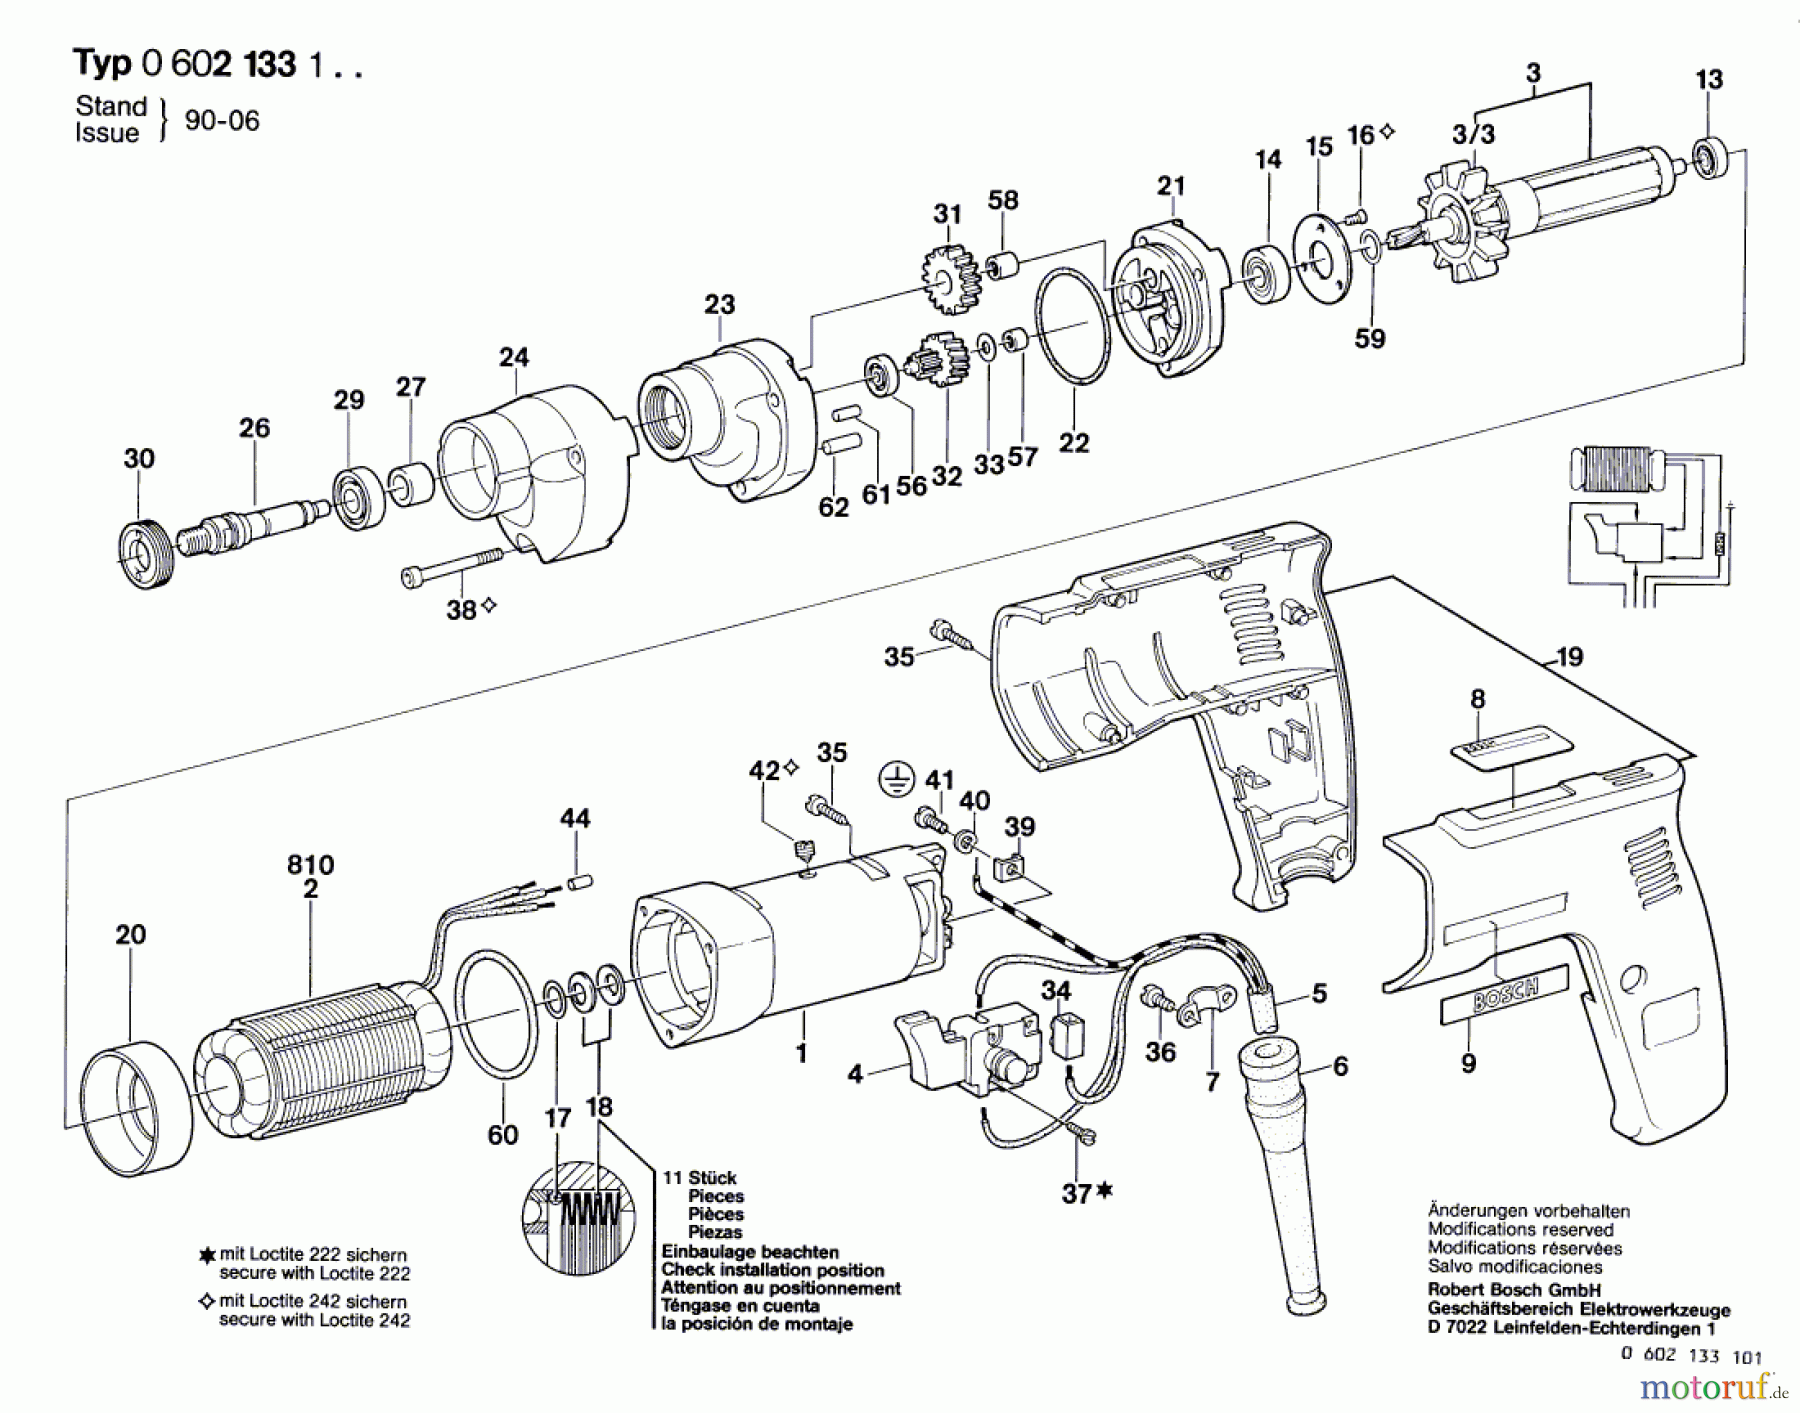  Bosch Werkzeug Hf-Bohrmaschine GR.57 Seite 1